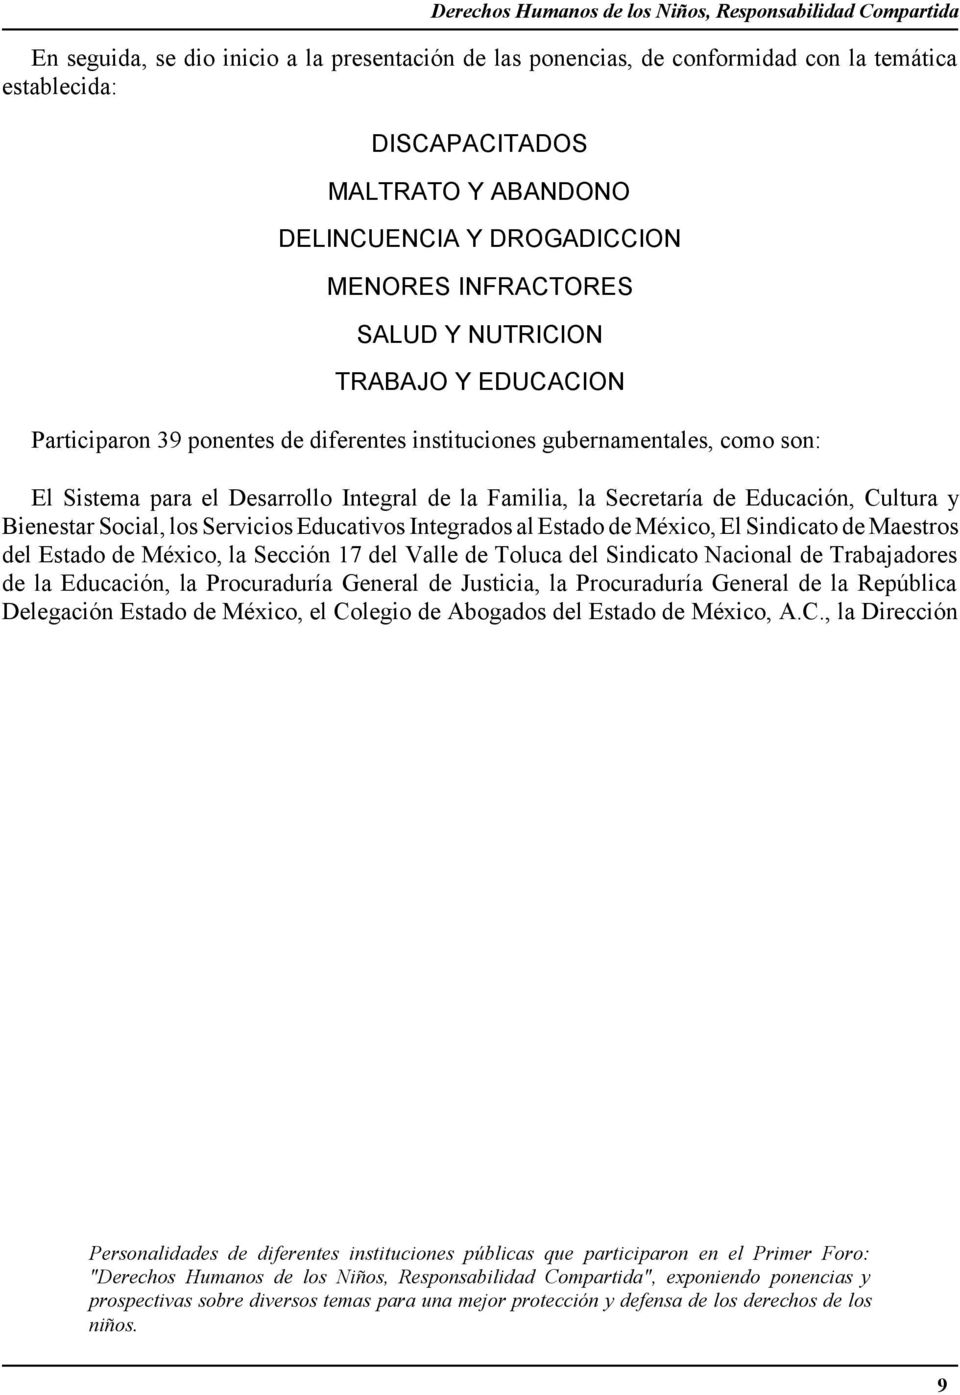 Integral de la Familia, la Secretaría de Educación, Cultura y Bienestar Social, los Servicios Educativos Integrados al Estado de México, El Sindicato de Maestros del Estado de México, la Sección 17